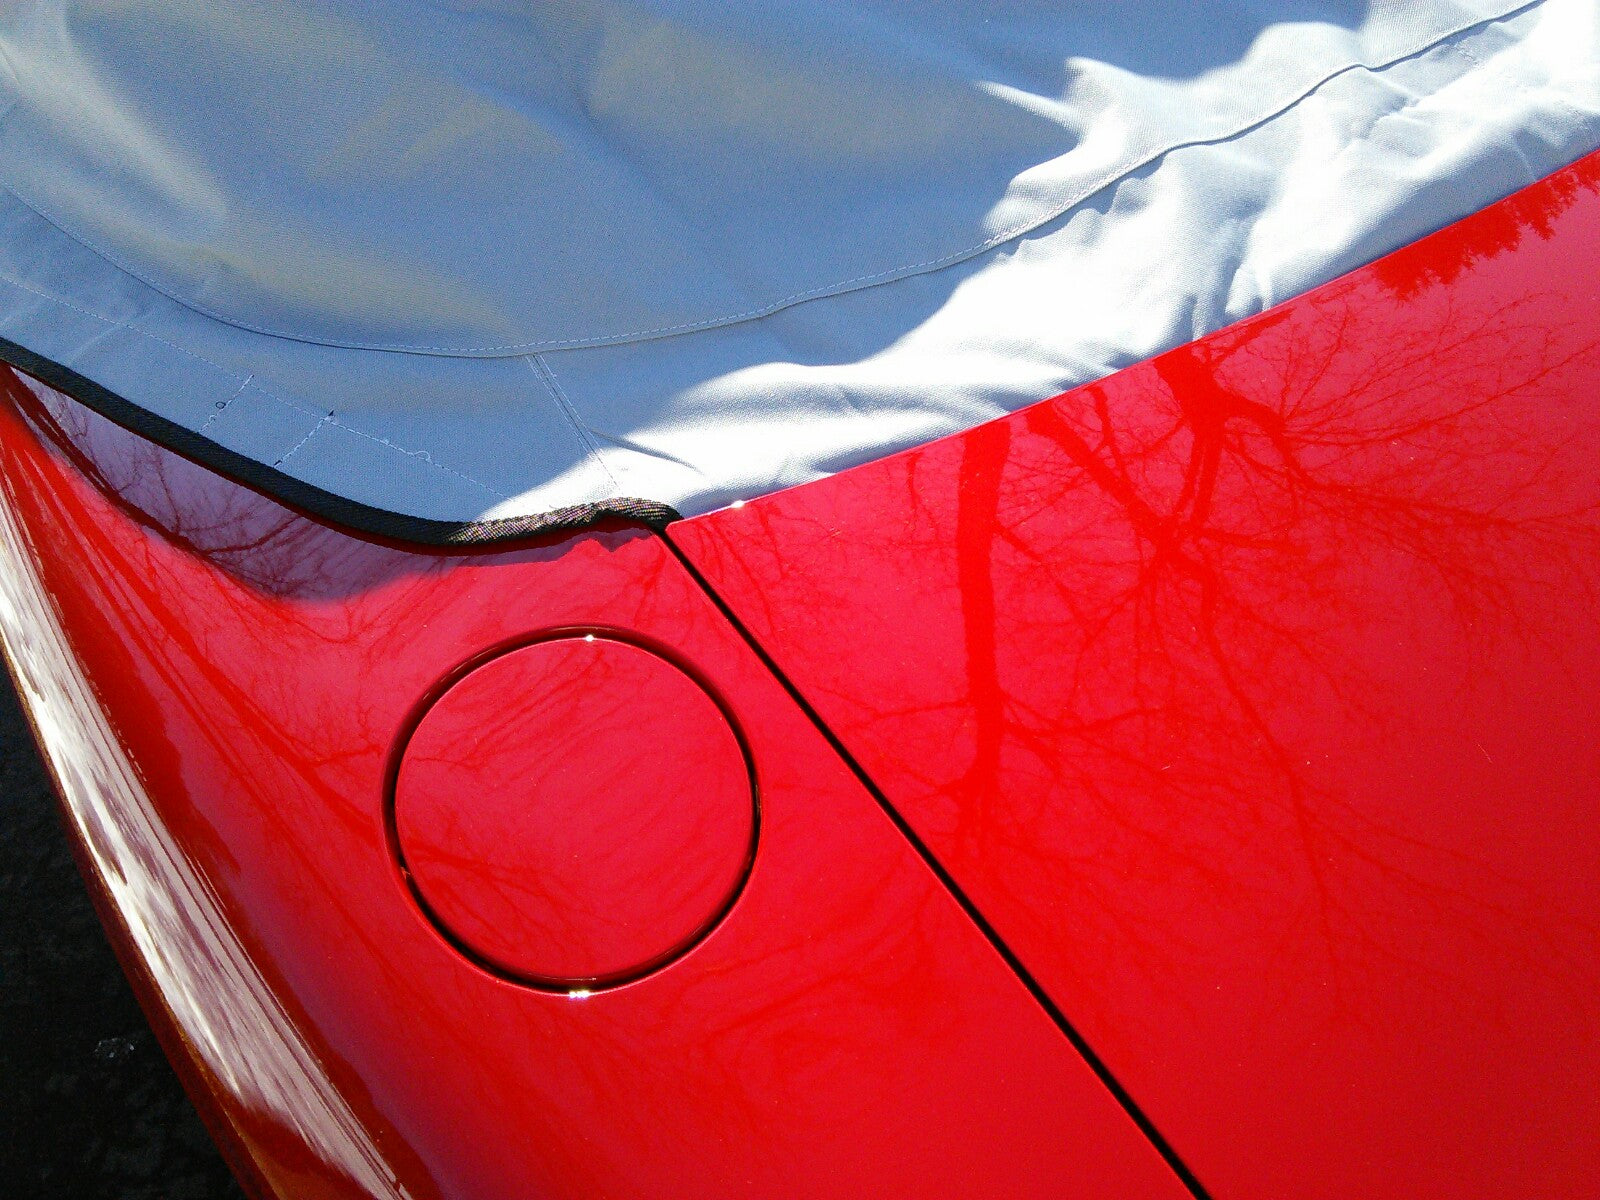 Demi-couverture de protection de toit souple pour Mazda Miata MX5 Mk1 (NA) Mk2 (NB) Mk2.5 - 1989 à 2005 (113G) - GRIS